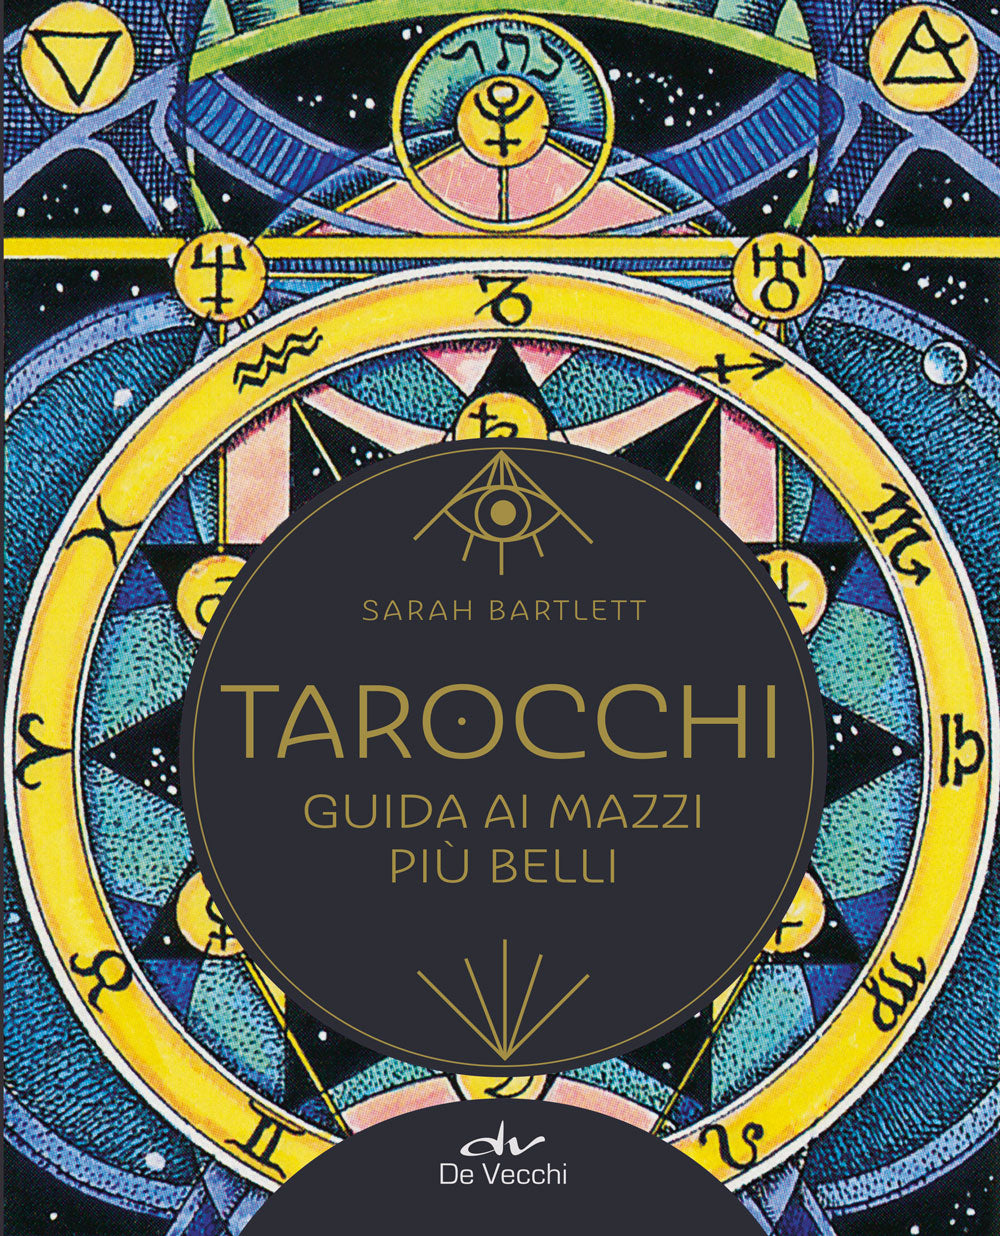 Tarocchi, Sarah Bartlett